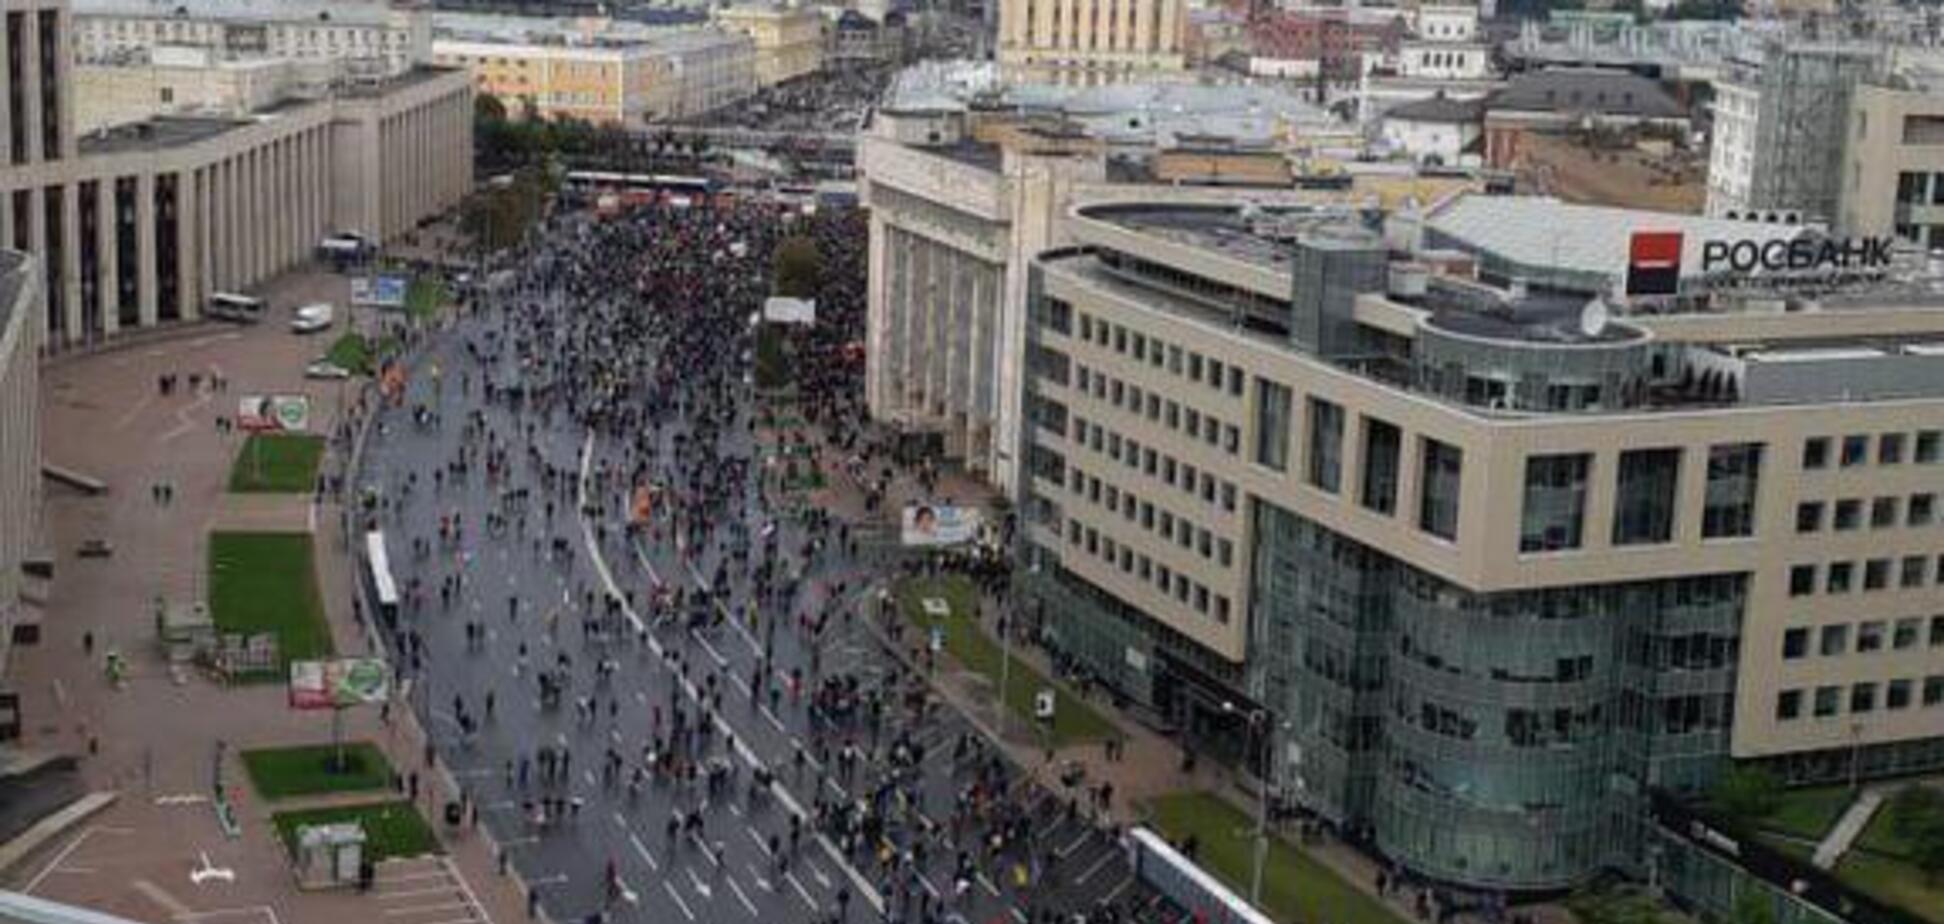 Вырывали флаги Украины: жалкий митинг в Москве